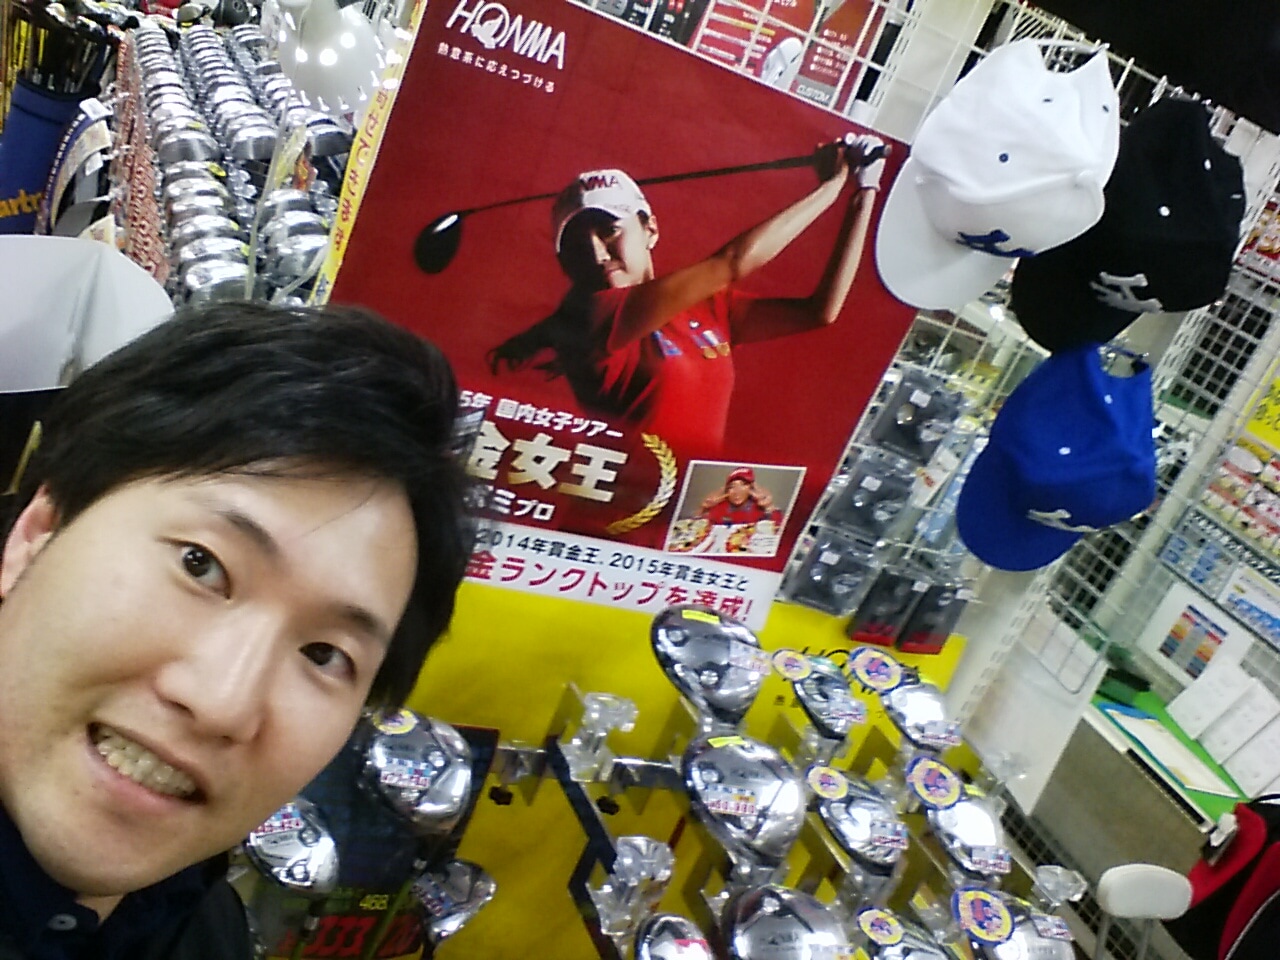 http://www.golfpartner.co.jp/536/IMG_20160115_182239.jpg